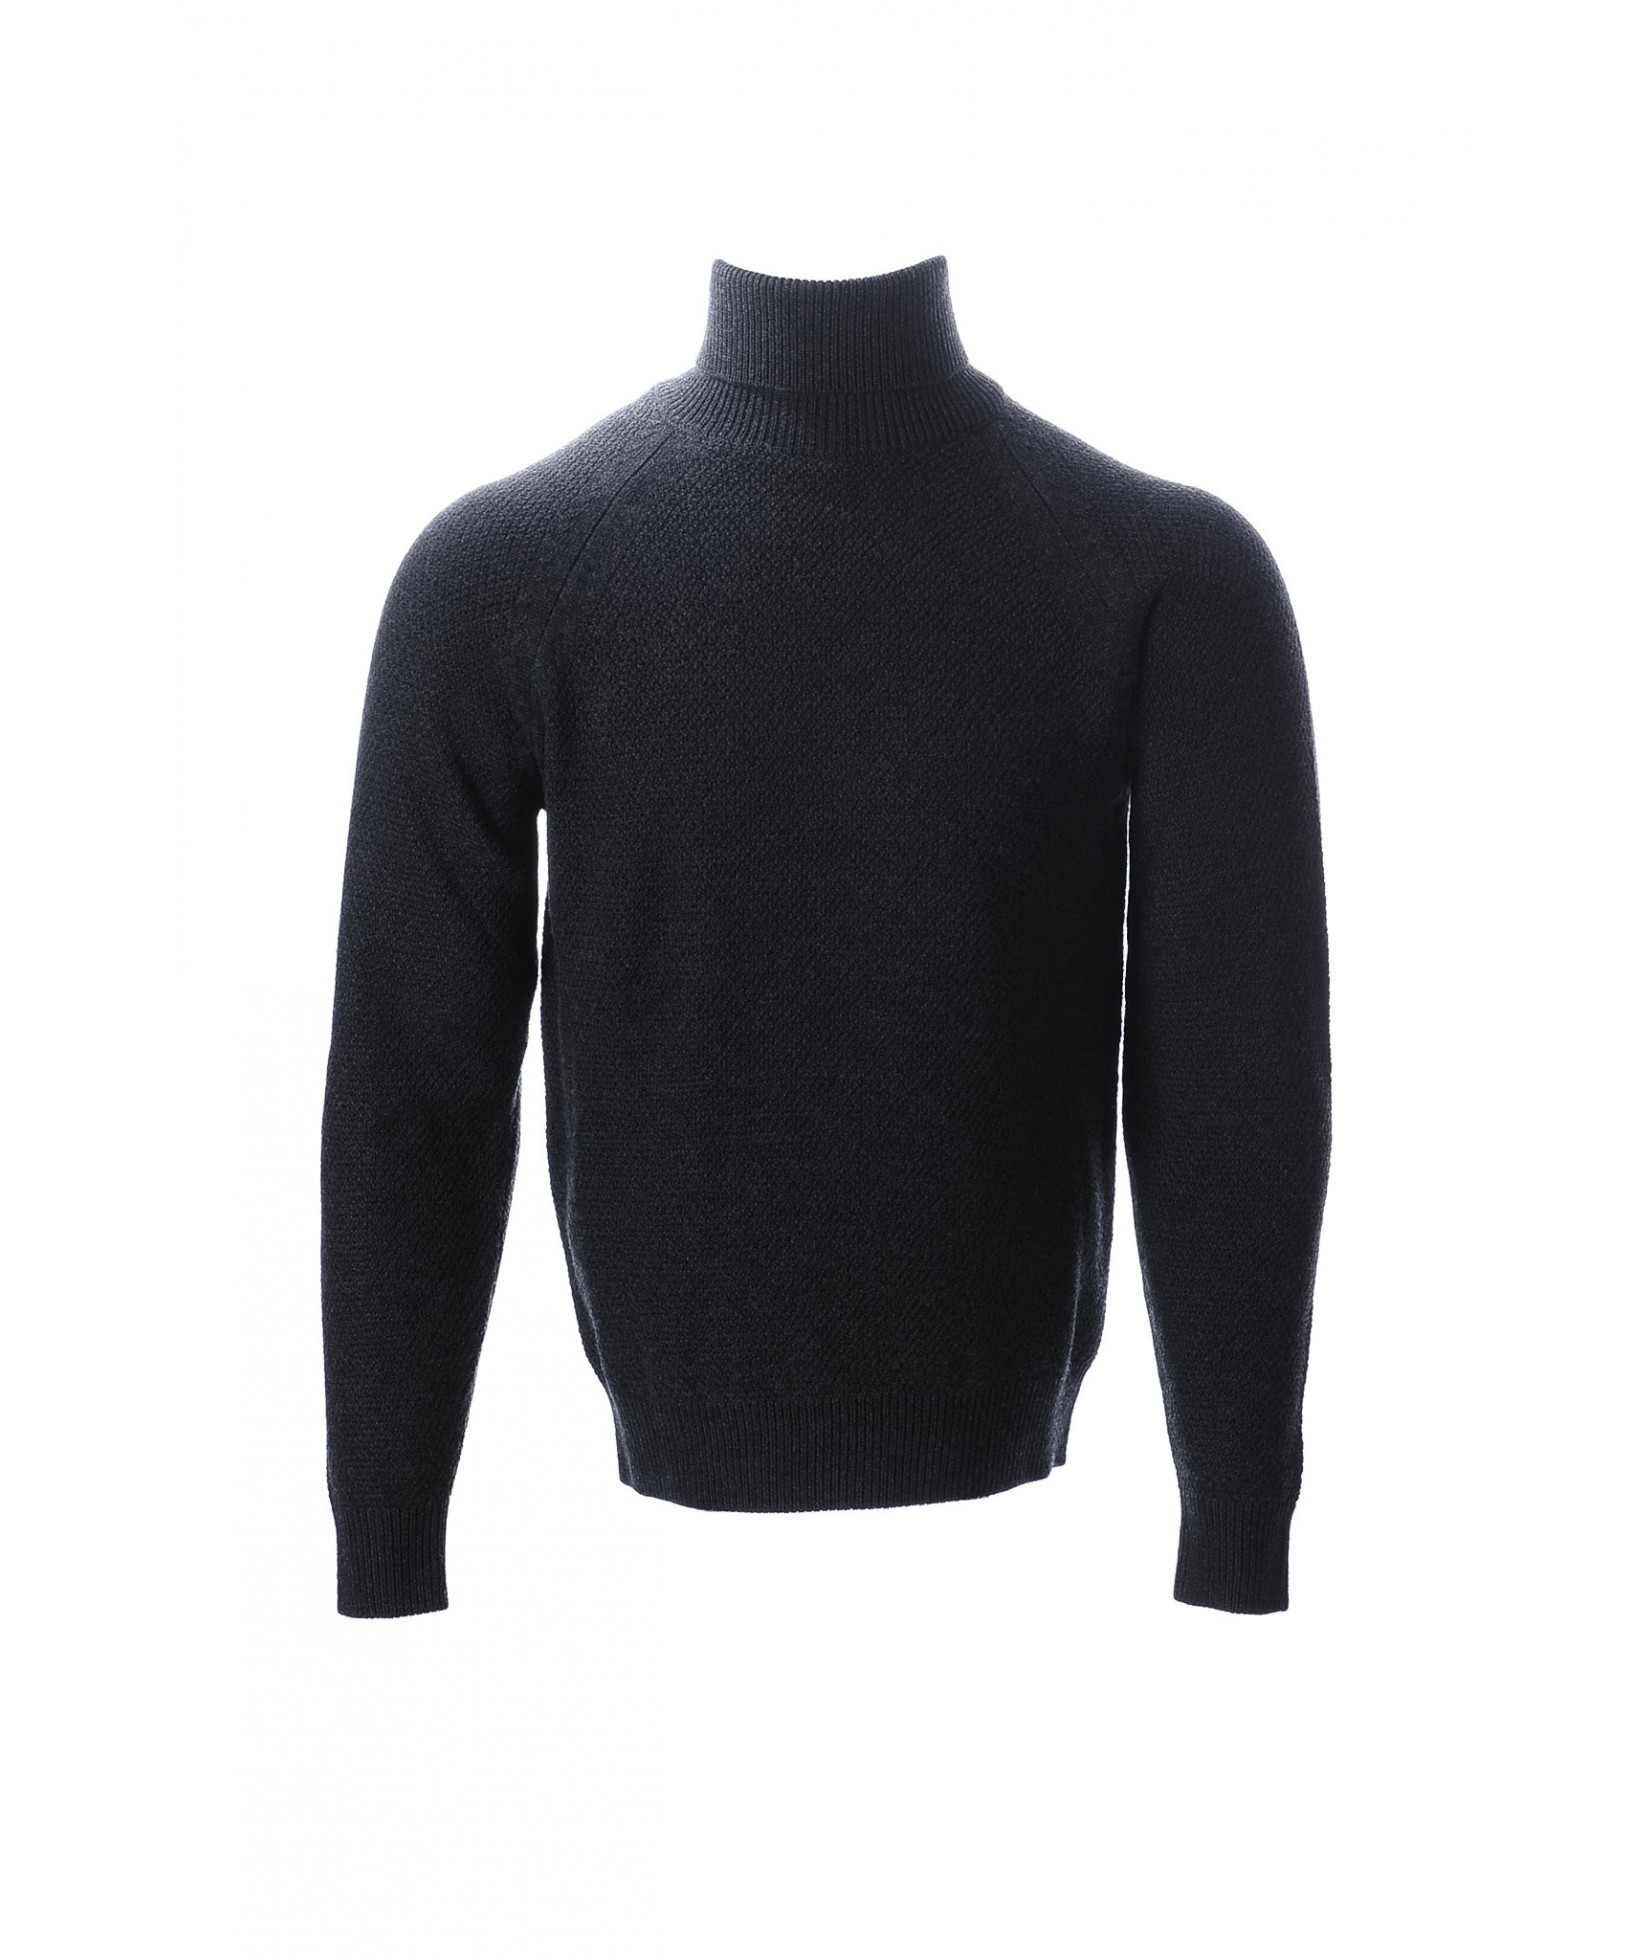 Jacob Cohën sweater gris foncé   (36300)